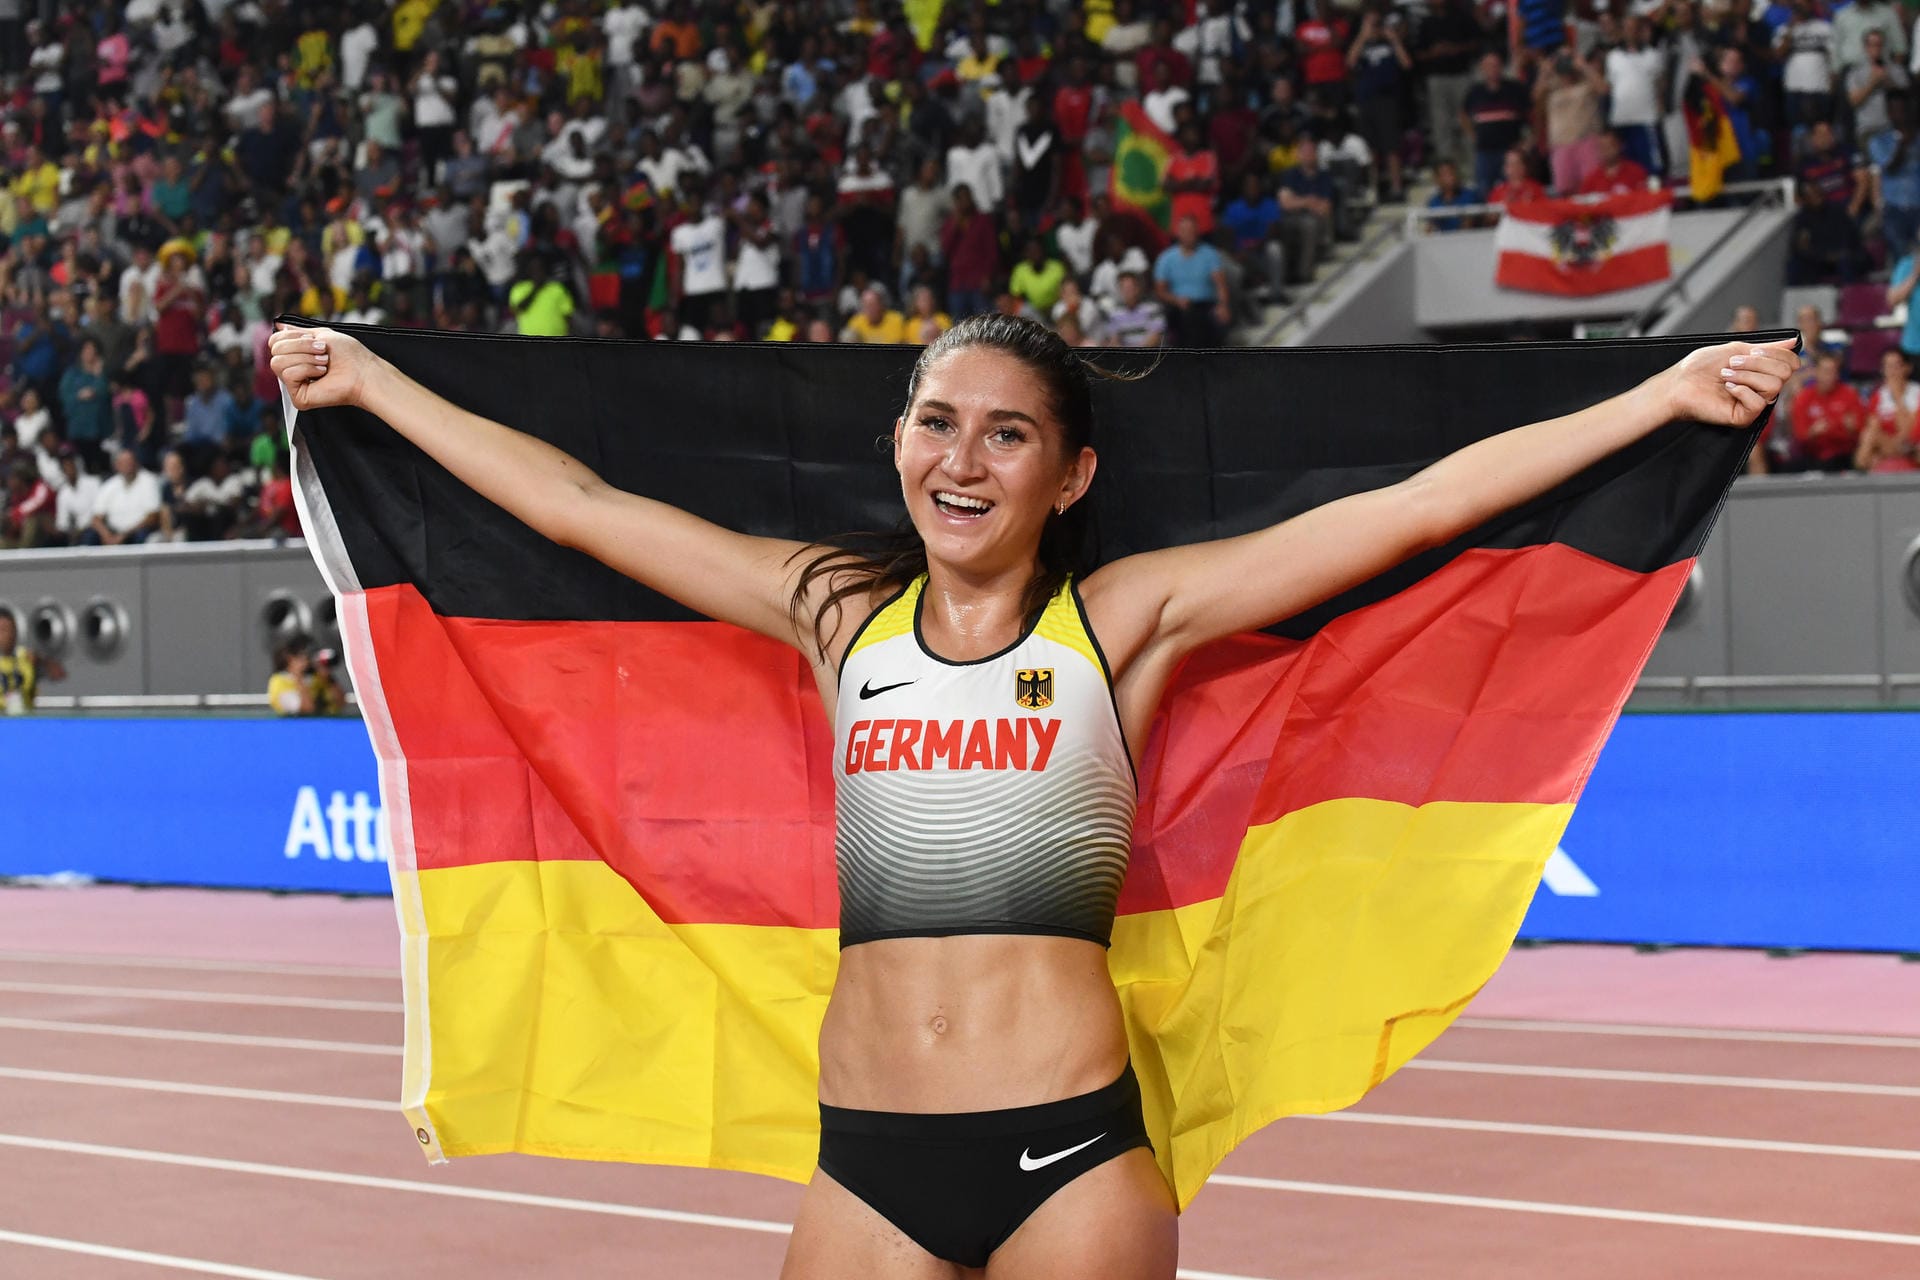 Mit Gesa Felicitas Krause hat die erste Deutsche eine Medaille bei der Leichtathletik-WM in Katar gewonnen. Über die 3000 Meter Hindernis glänzte die 27-Jährige und holte Bronze. Aus deutscher Sicht soll es aber nicht bei dieser einen Medaille bleiben. Auch andere Athleten haben gute Chancen, Edelmetall zu gewinnen.